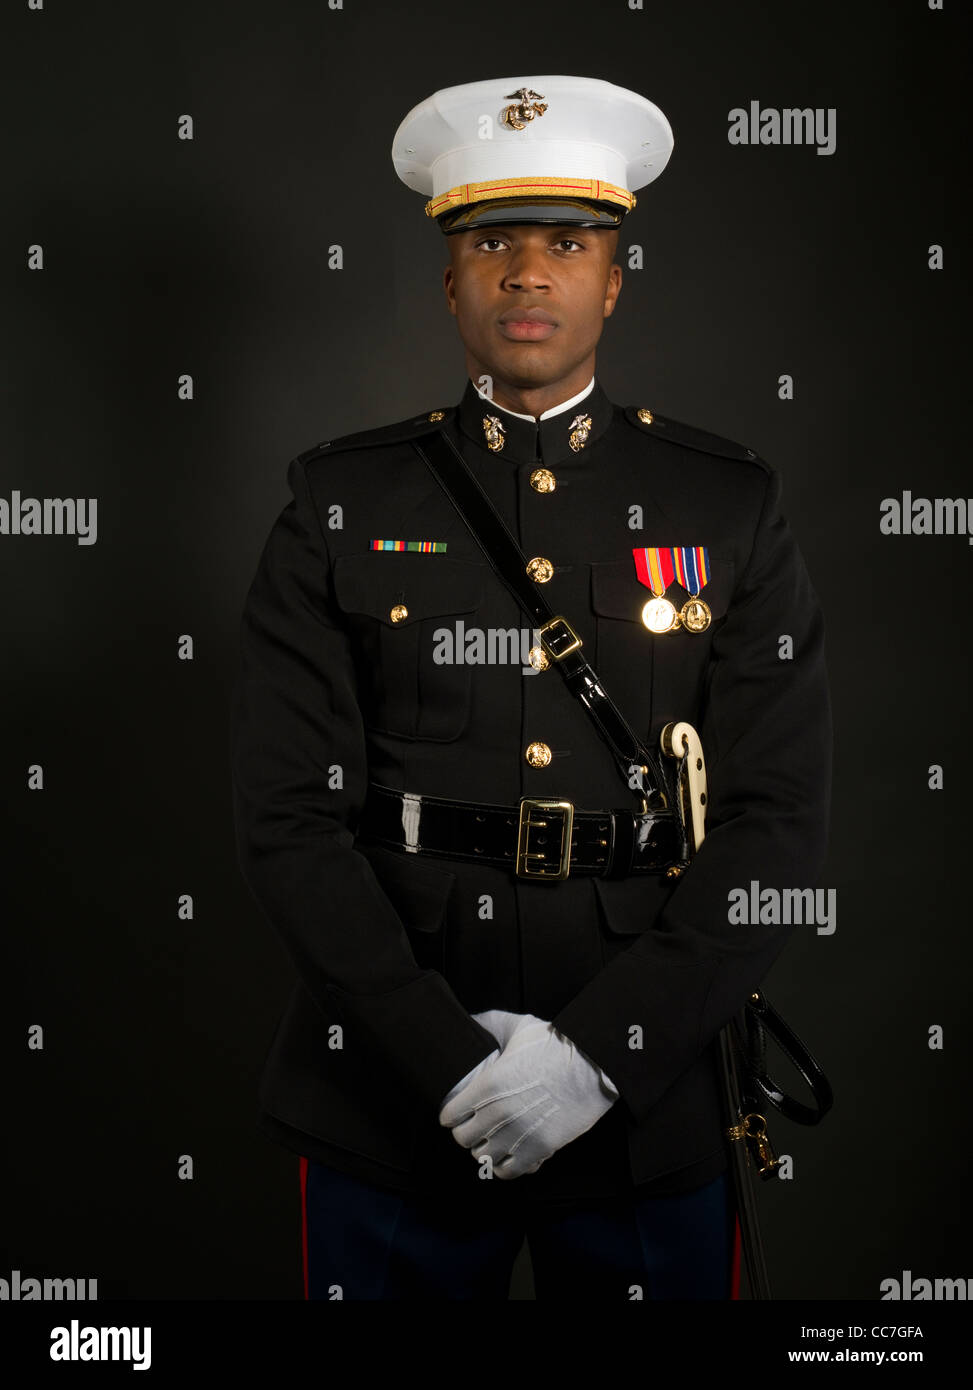 United States Marine Corps Uniform 50